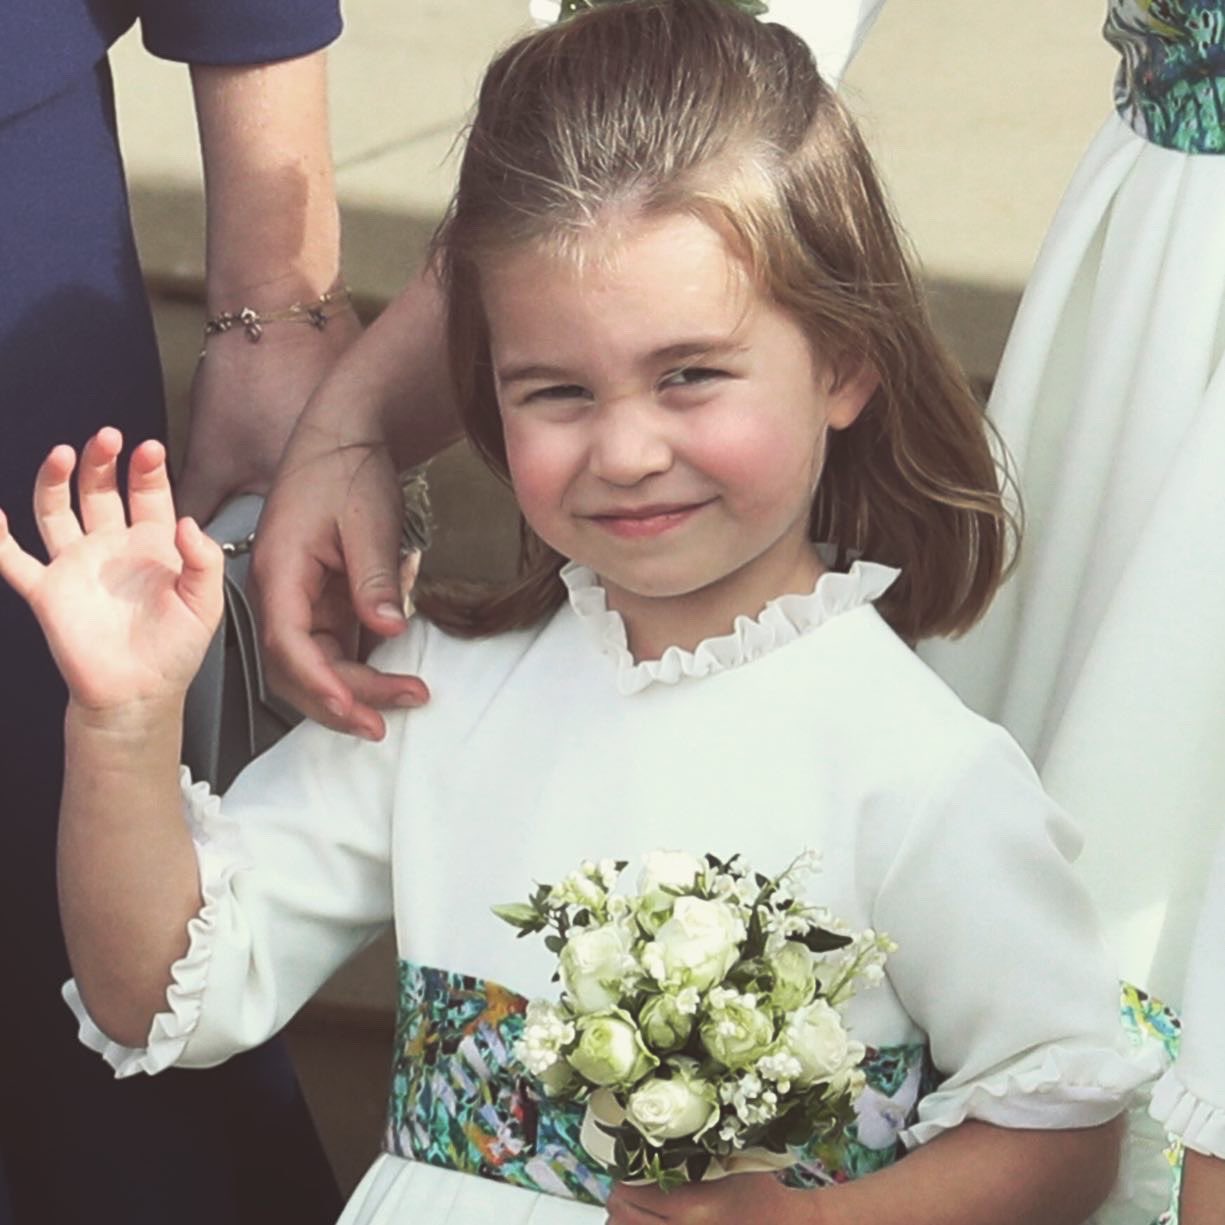 العائلة الملكية البريطانية تهنئ الأميرة شارلوت بعيد ميلادها الـ 5  (3)